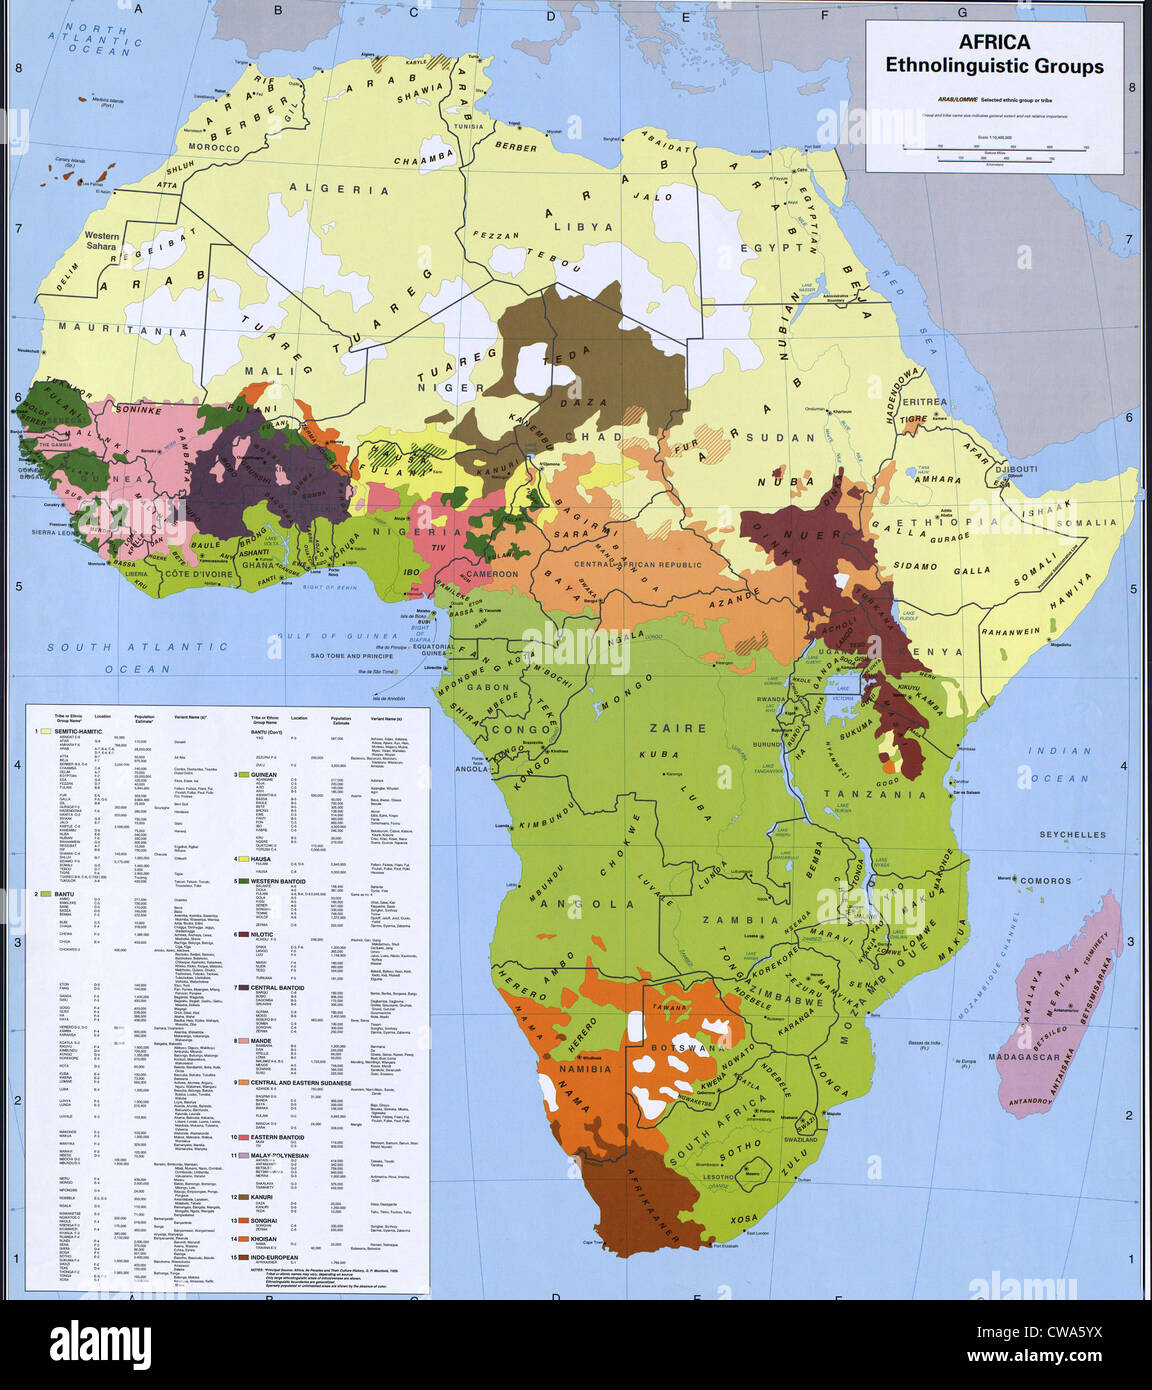 Mappa che mostra l'etnologia e gruppi linguistici dell Africa che sono in conflitto con i confini nazionali, sulla base della colonizzazione europea. Foto Stock